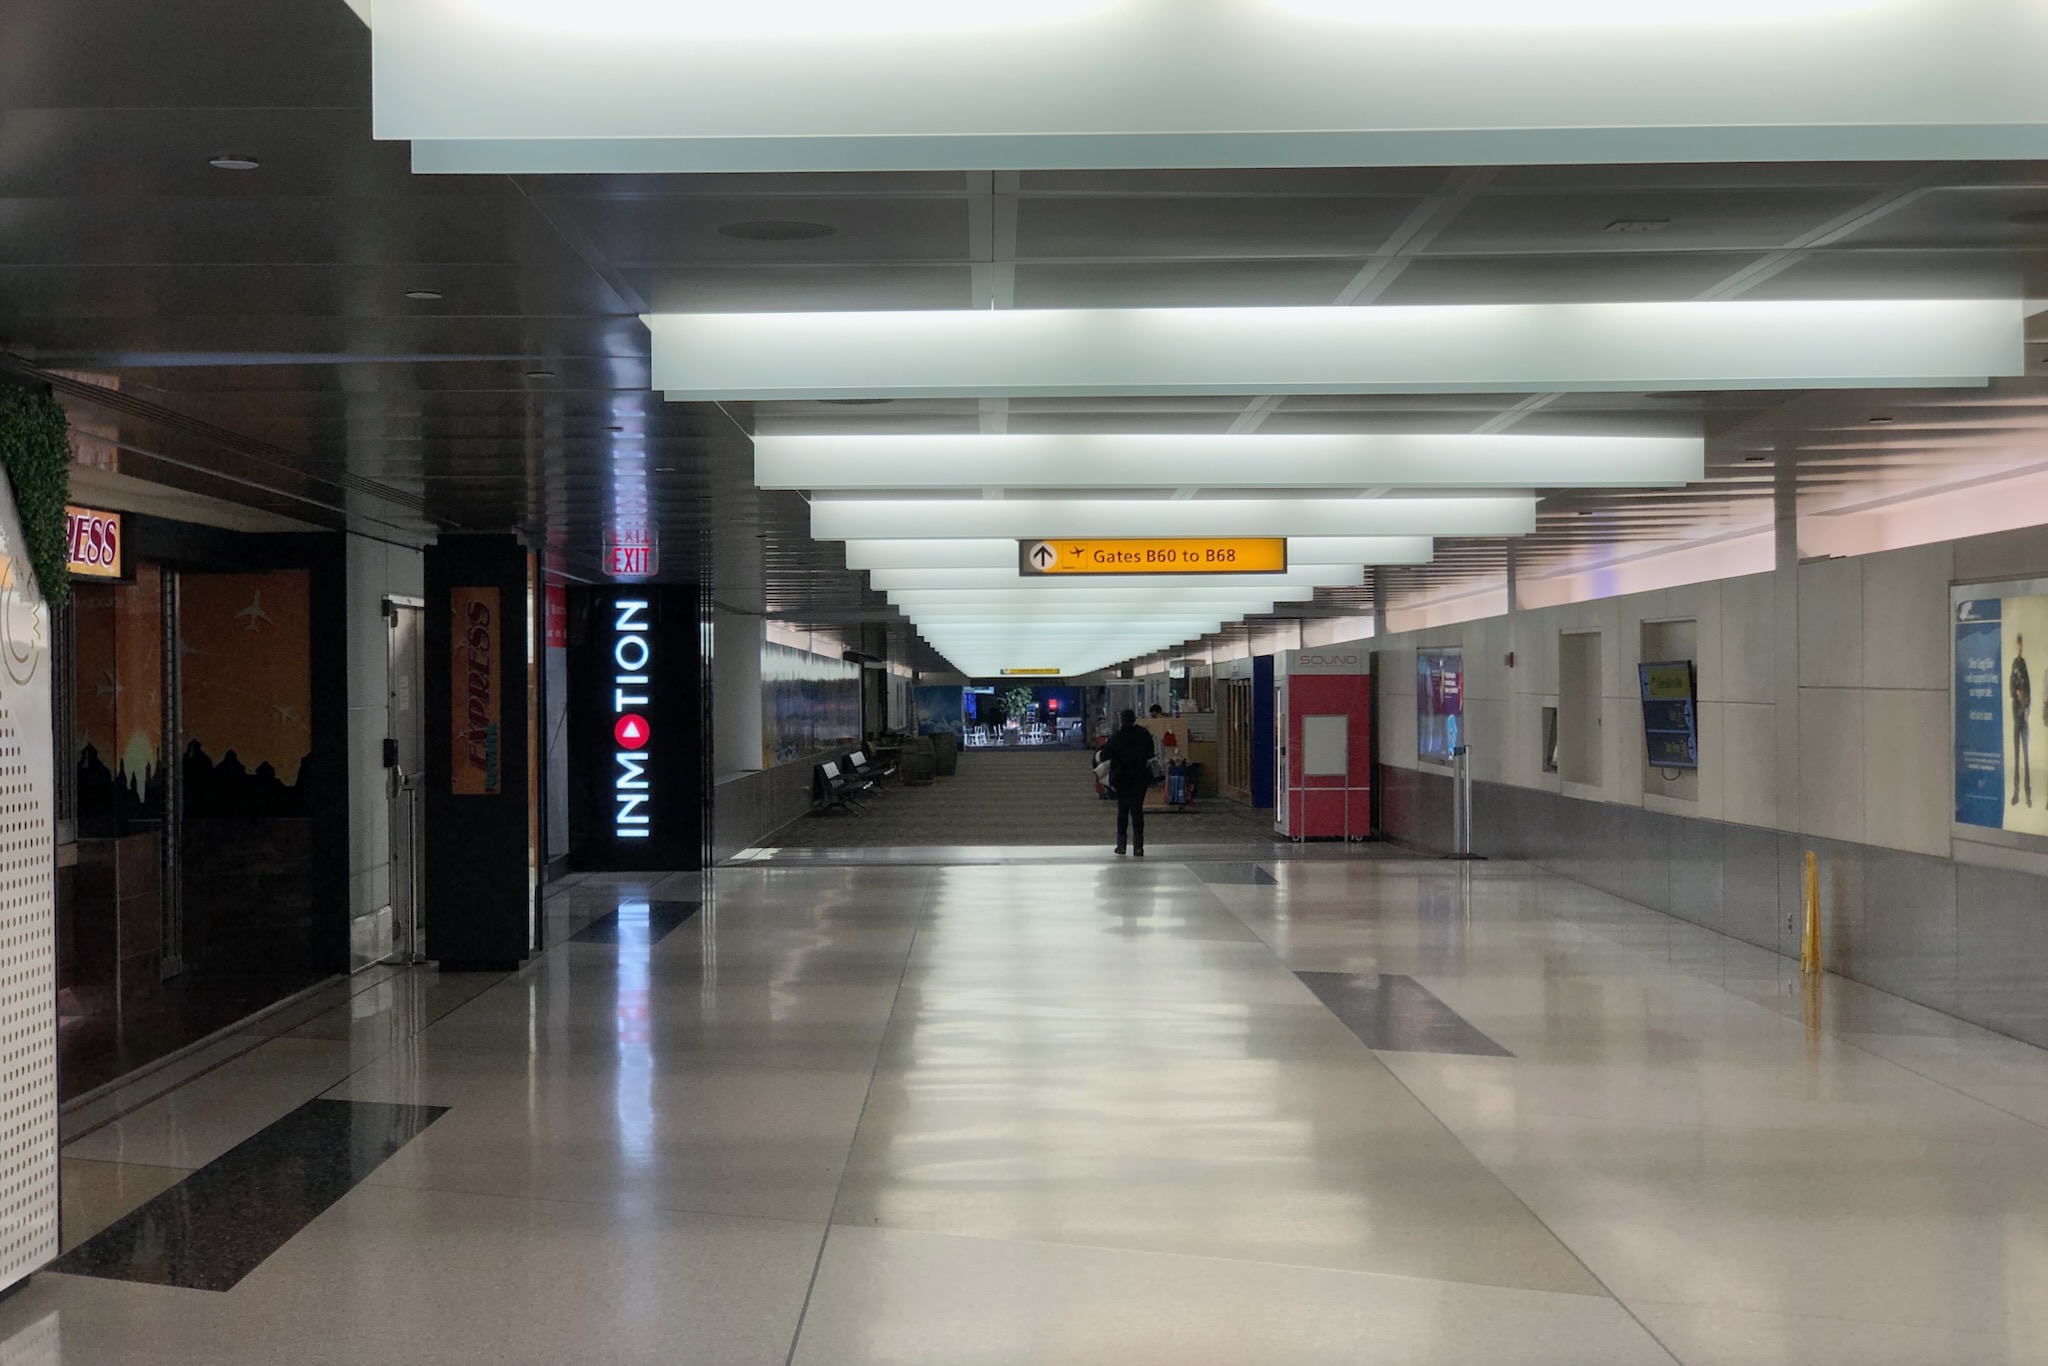 Weg zu den Lounges im Gate-Bereich 60–68 am Flughafen Newark